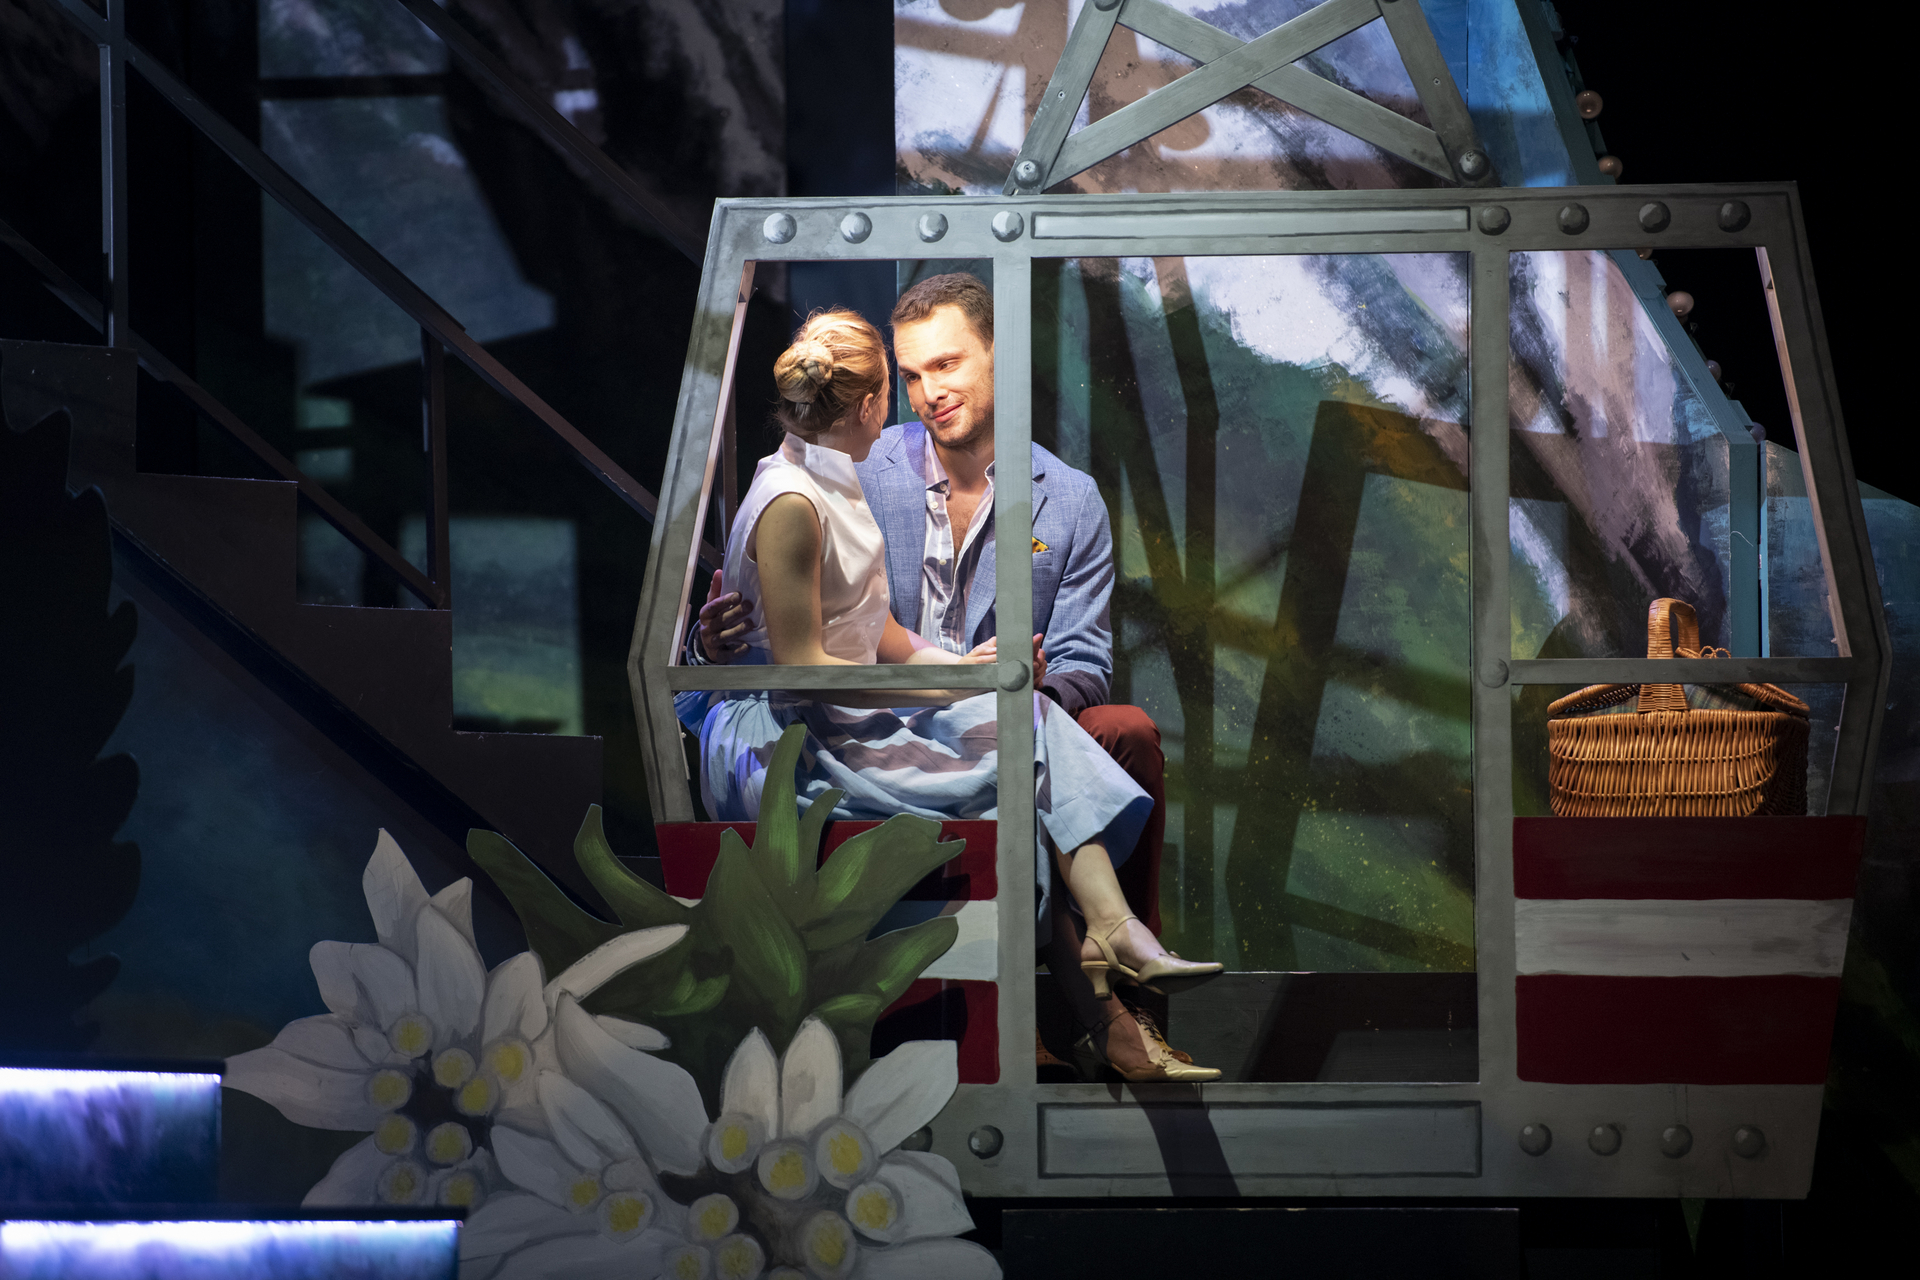 Ein Liebespaar mit Picknickkorb in einer Gondel, verliebte blicke, romantisches Licht, Frau im Kleid, Mann mit Hemd und Sakko